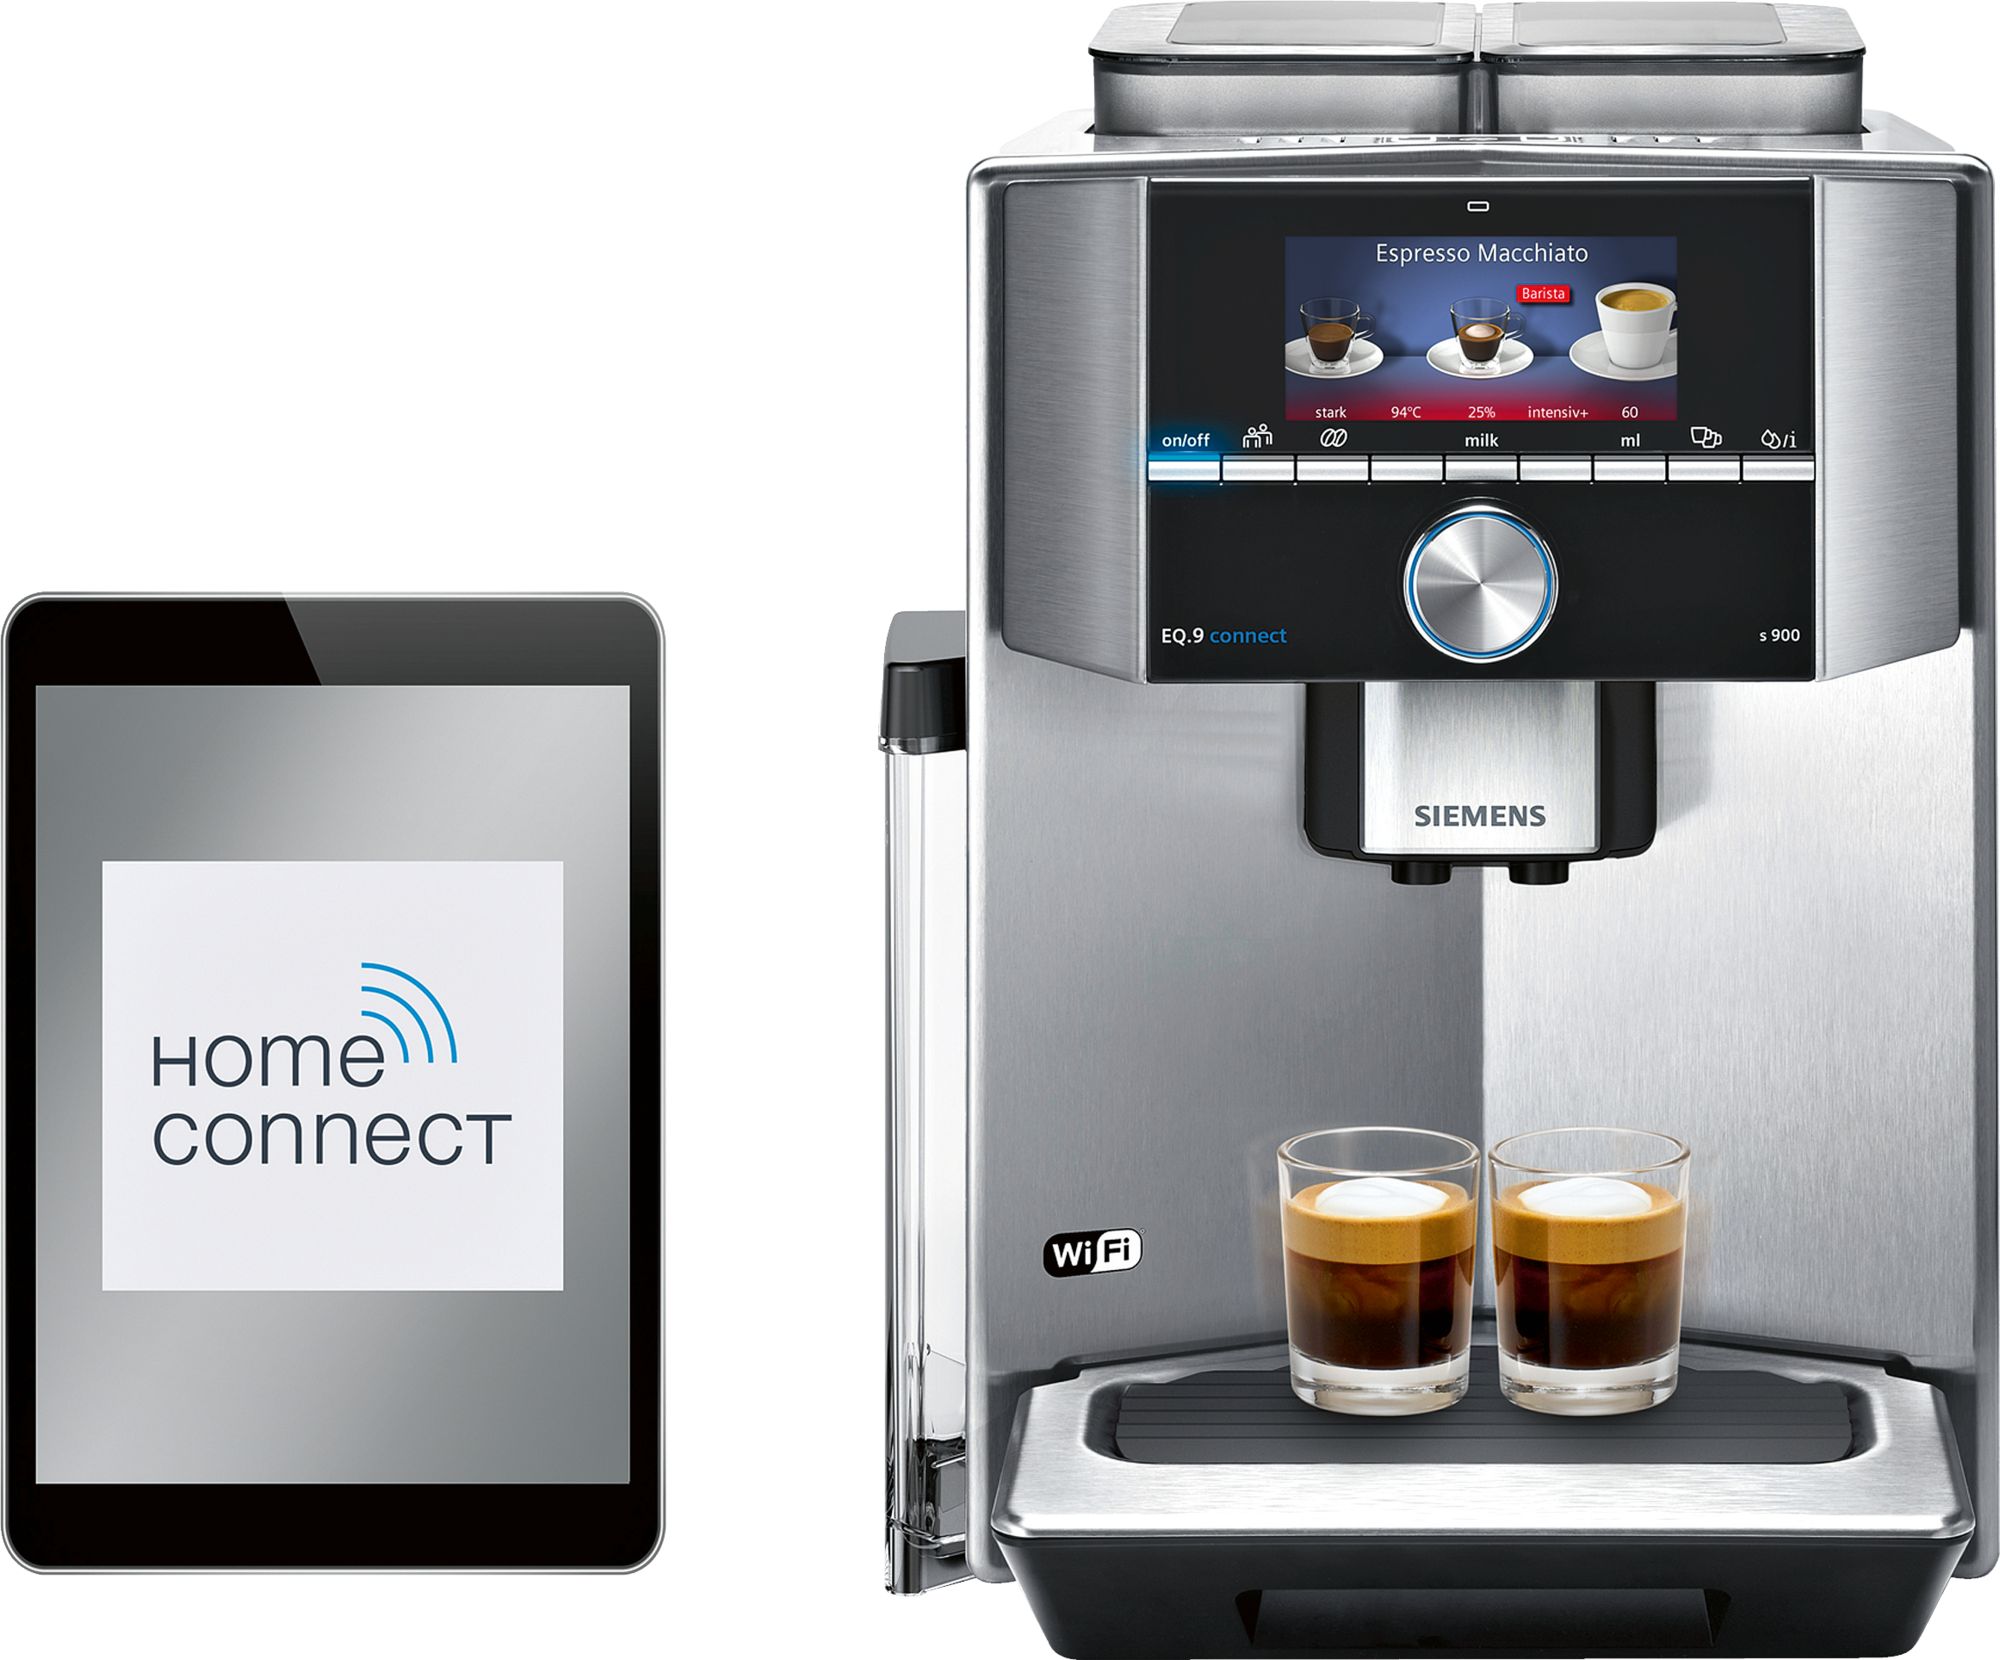 Fully automatic coffee machine EQ.9 s900 Paslanmaz çelik